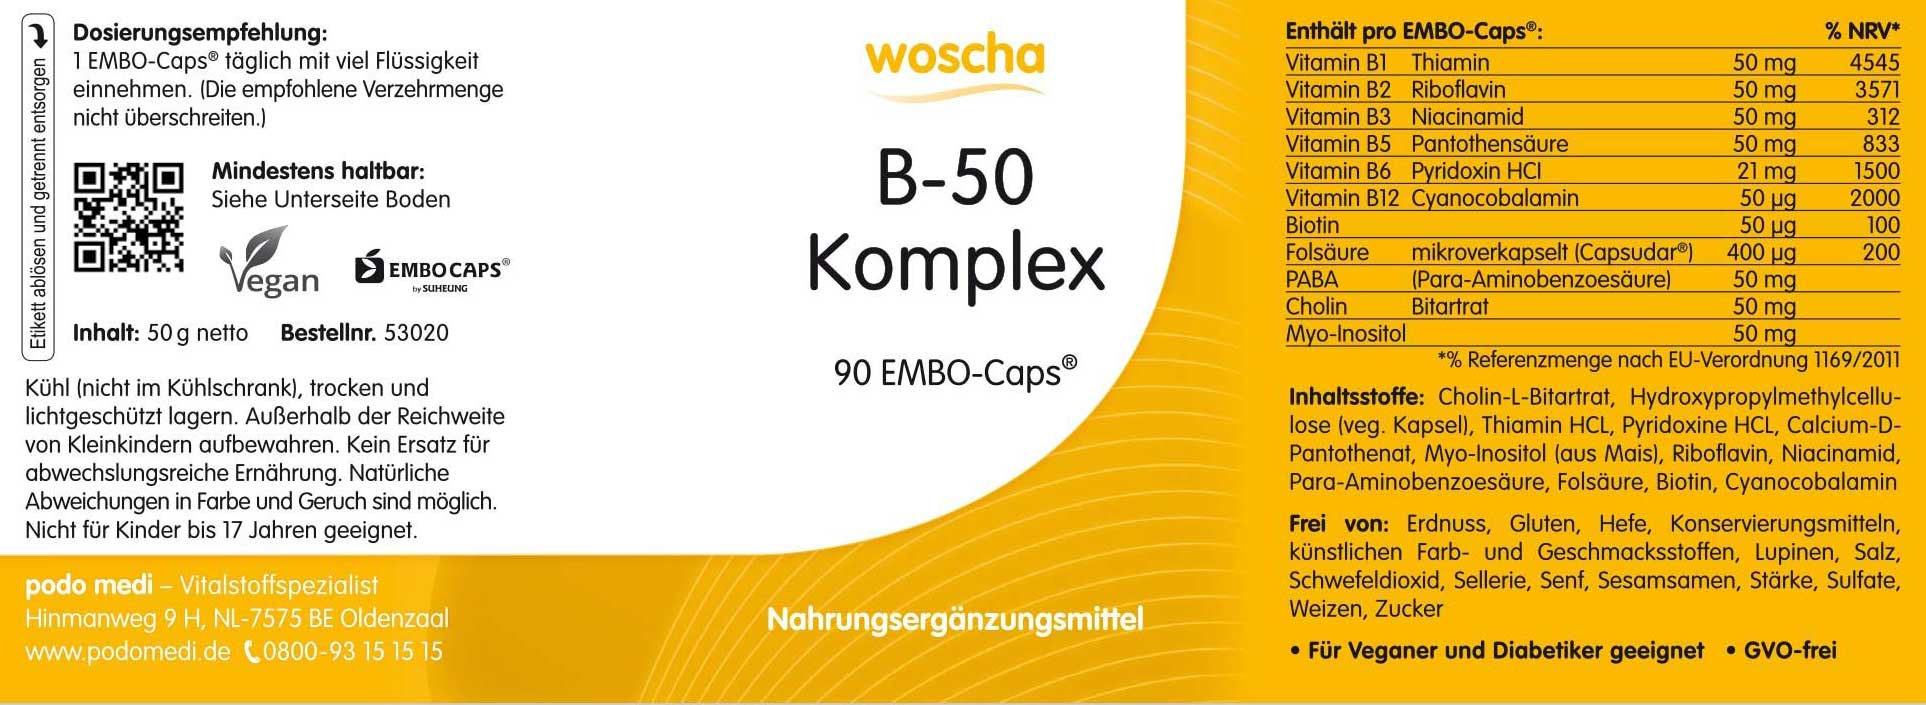 Woscha B-50 Komplex von podo medi beinhaltet 90 Kapseln Etikett 